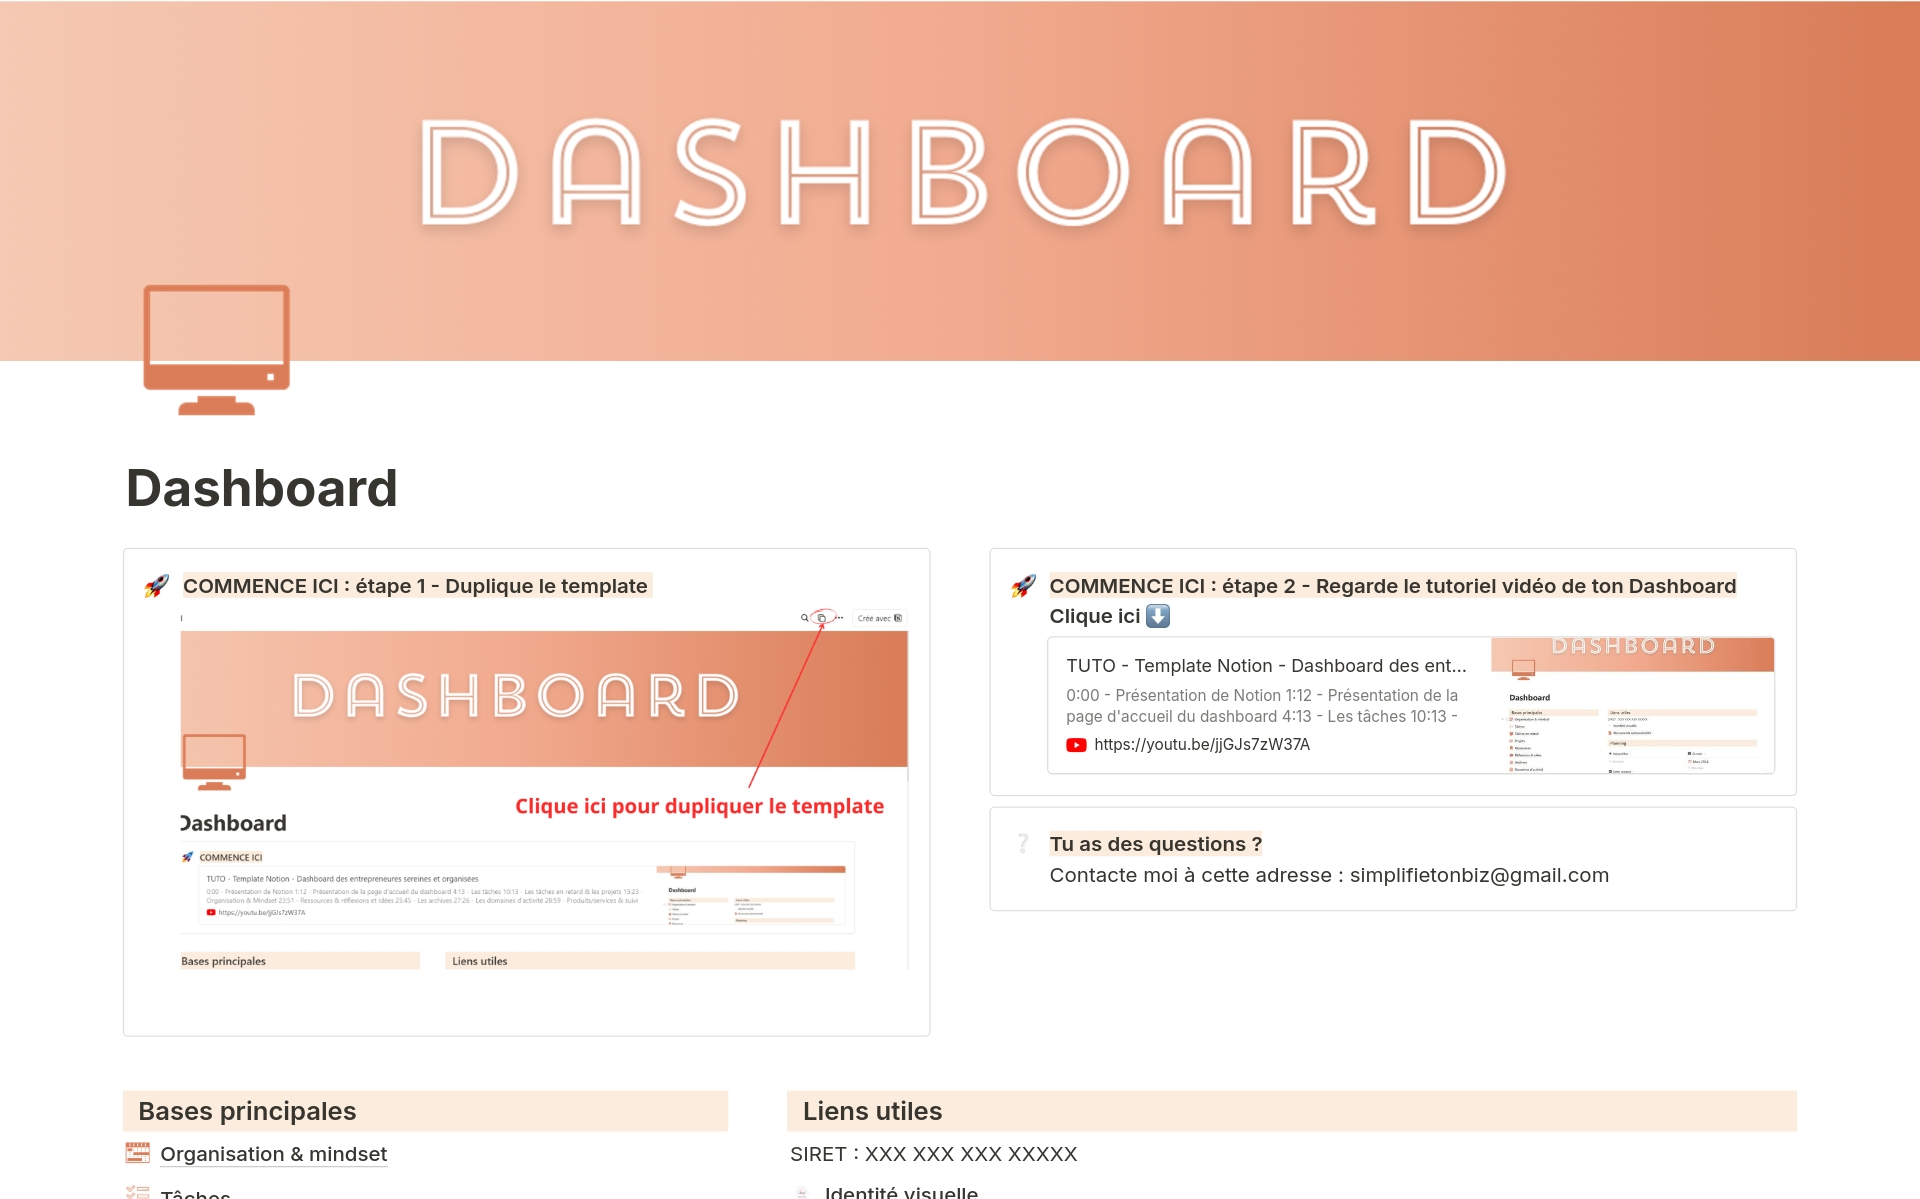 Un dashboard complet pour gérer les tâches, les projets, organiser et planifier.